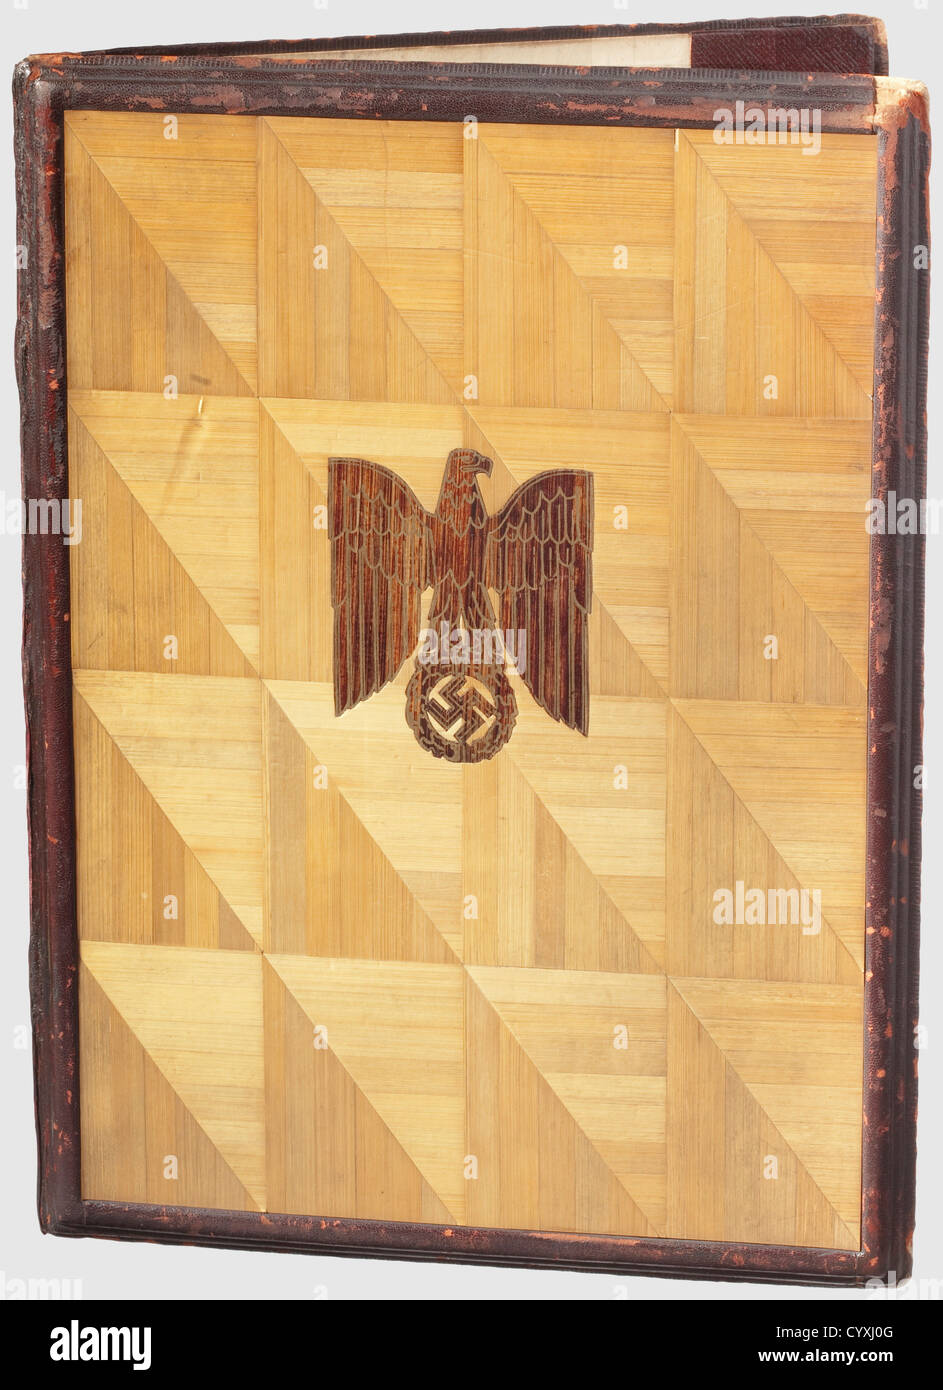 Reichstatthalter Wilhelm Murr Jubiläumsurkunde der SS 1938,einseitig Pergamentdokument mit kalligraphischem Text, überzogen von einem fein gemalten Nationaladler. Abmessungen 30.3 x 21.1 cm. In einem Ordner mit Holzeinlage und Vorderseite Inset National Eagle in Gold akzentuiert, eingerahmt von rot-braun gepresstem Leder (gerieben). Abmessungen 35 x 26 cm. Wilhem Murr(1888 - 1945) wurde im Februar 1928 zum NSDAP Gauleiter von Württemberg-Hohenzollern und ab 1933 zum württembergischen Reichshauptmann,historisch,1930er,20. Jahrhundert,Waffen-SS,bewaffnete Teilung der ,Zusatzrechte-Freigaben-nicht verfügbar Stockfoto